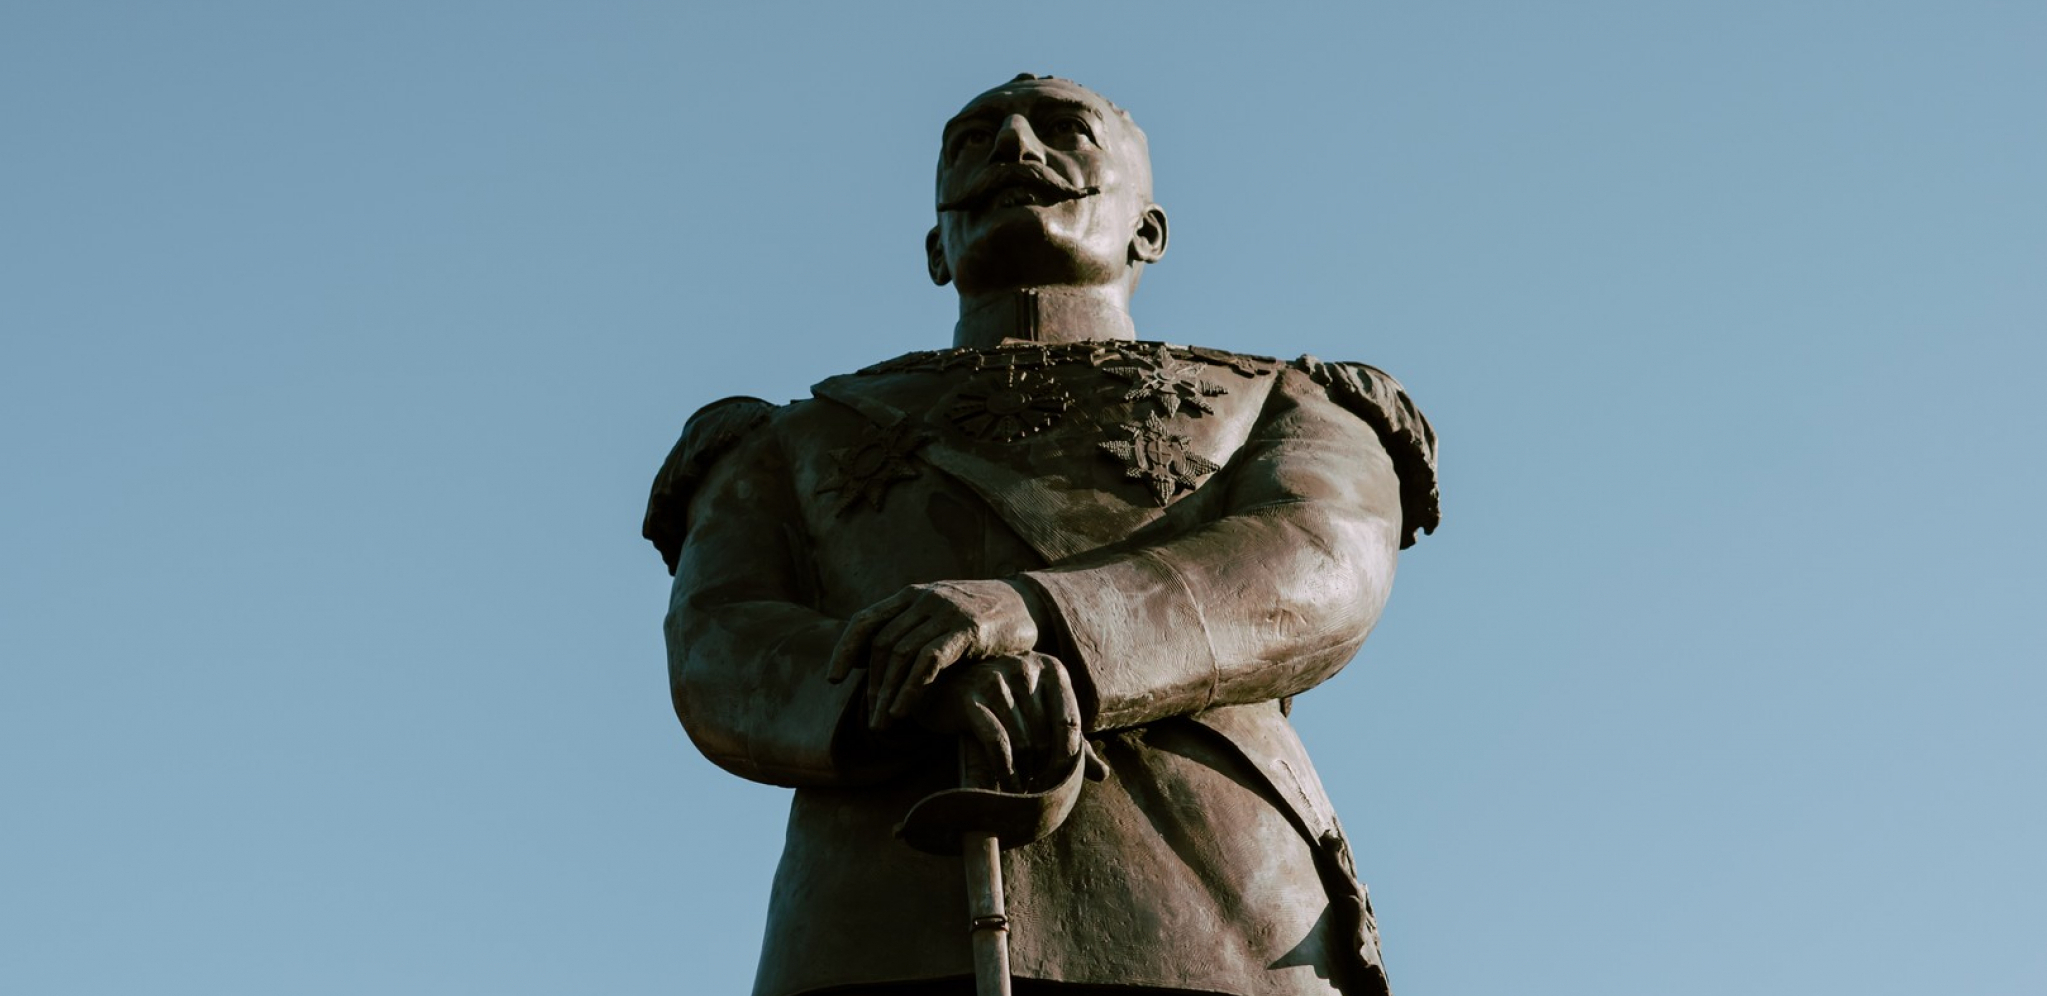 ZNAČAJAN DAN ZA SUBOTICU Položeni venci na spomenik Kralju Petru Prvom povodom 25. novembra 1918. godine